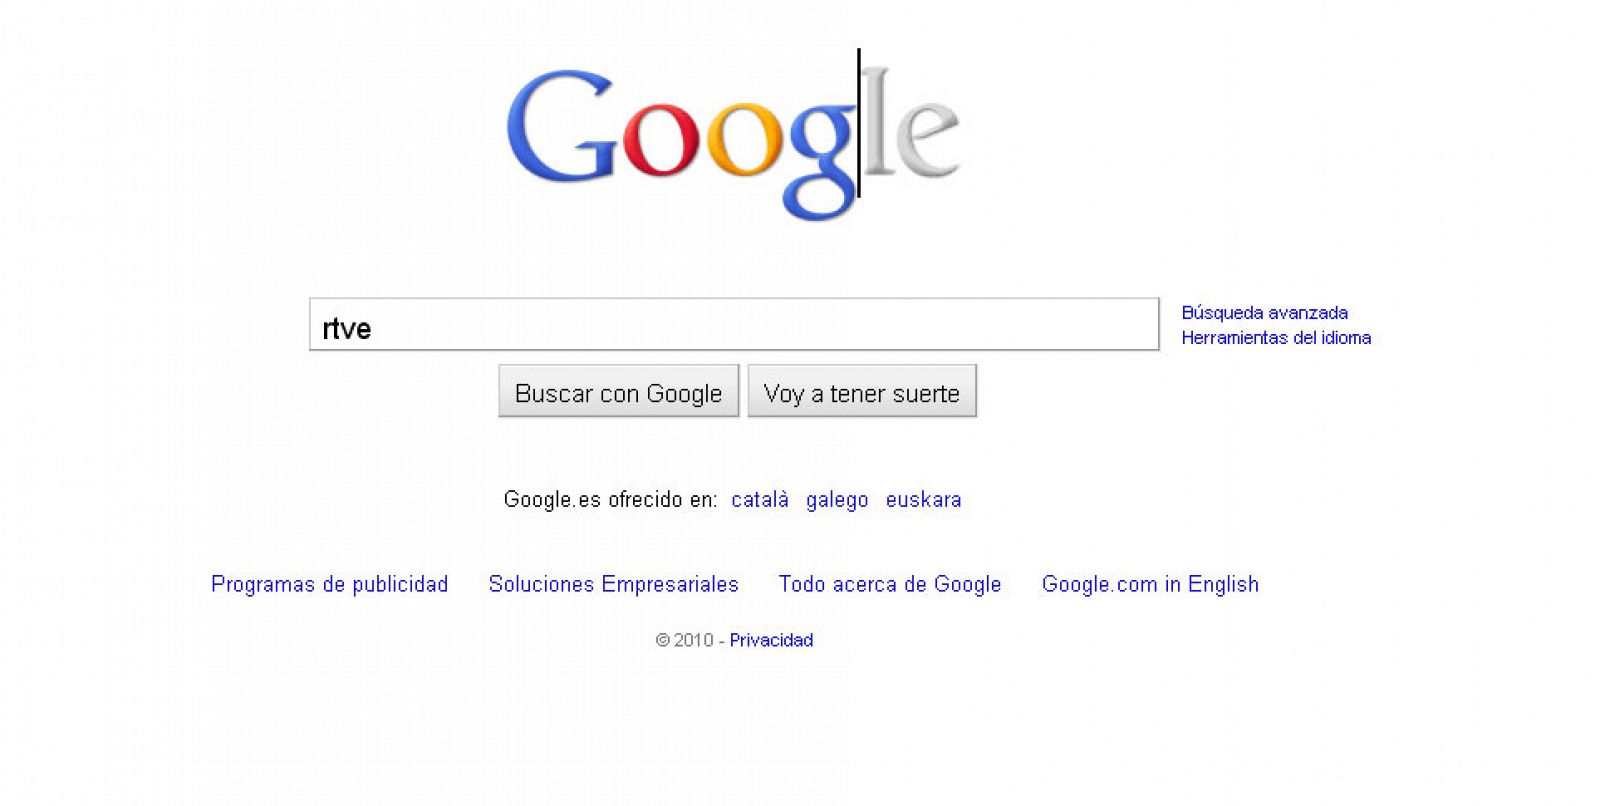 El logo de Google aparece en gris y se colorea a medida que se teclea la búsqueda